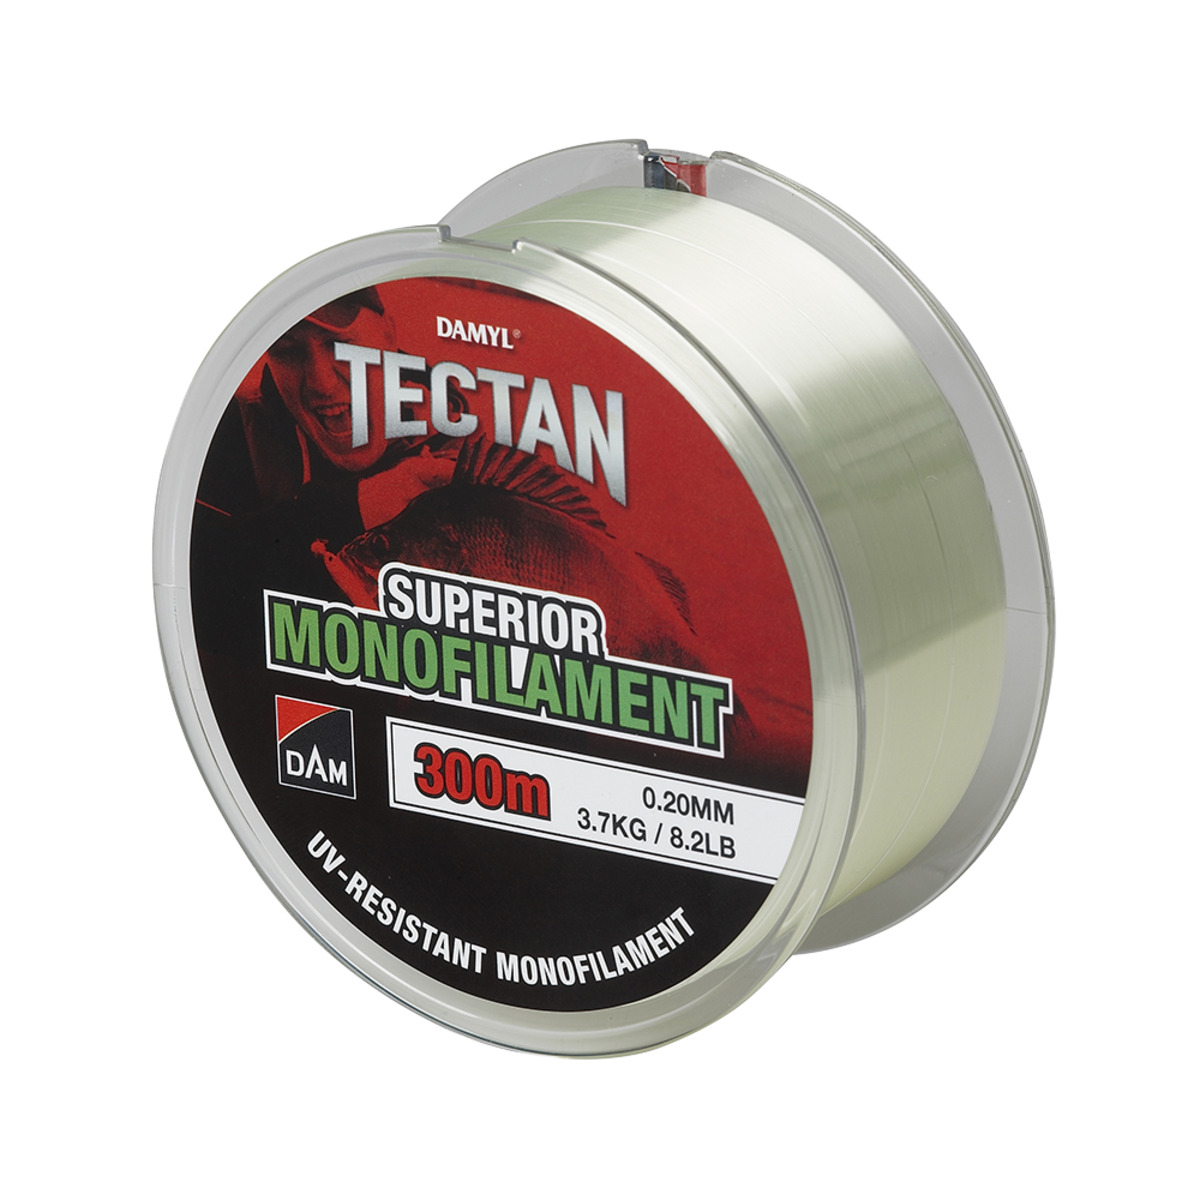 Dam Tectan Superior 300m - 0.20MM 3.7KG 8.2LBS GREEN TRANSPARANT